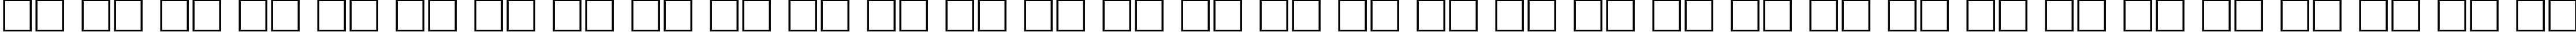 Пример написания русского алфавита шрифтом BalticaCTT Italic